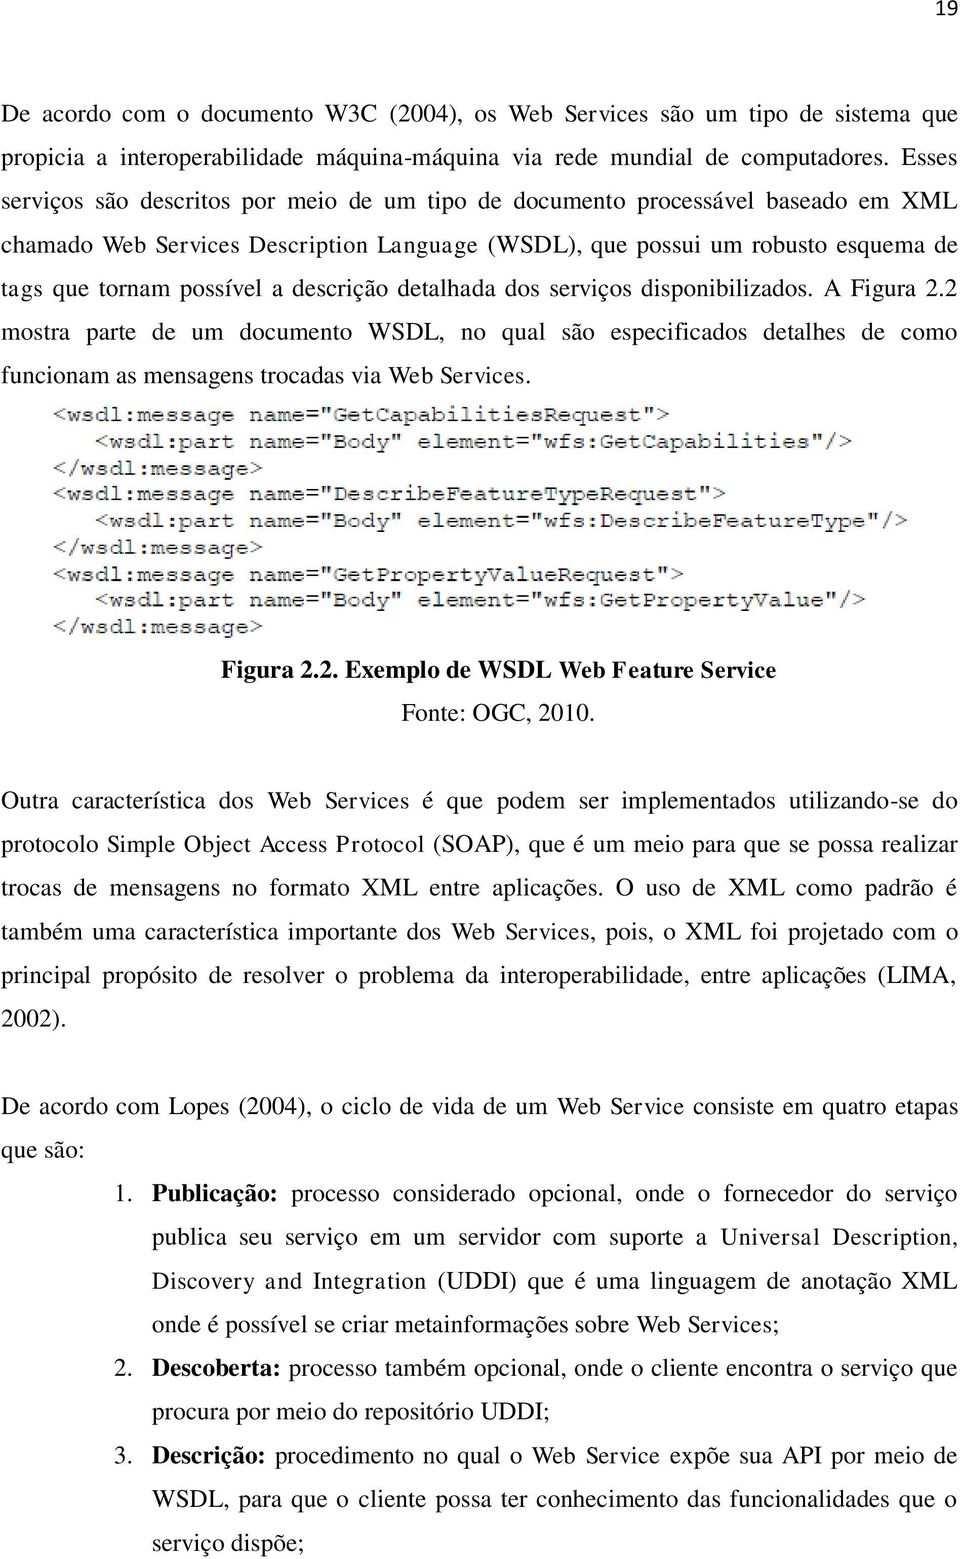 descrição detalhada dos serviços disponibilizados. A Figura 2.2 mostra parte de um documento WSDL, no qual são especificados detalhes de como funcionam as mensagens trocadas via Web Services.